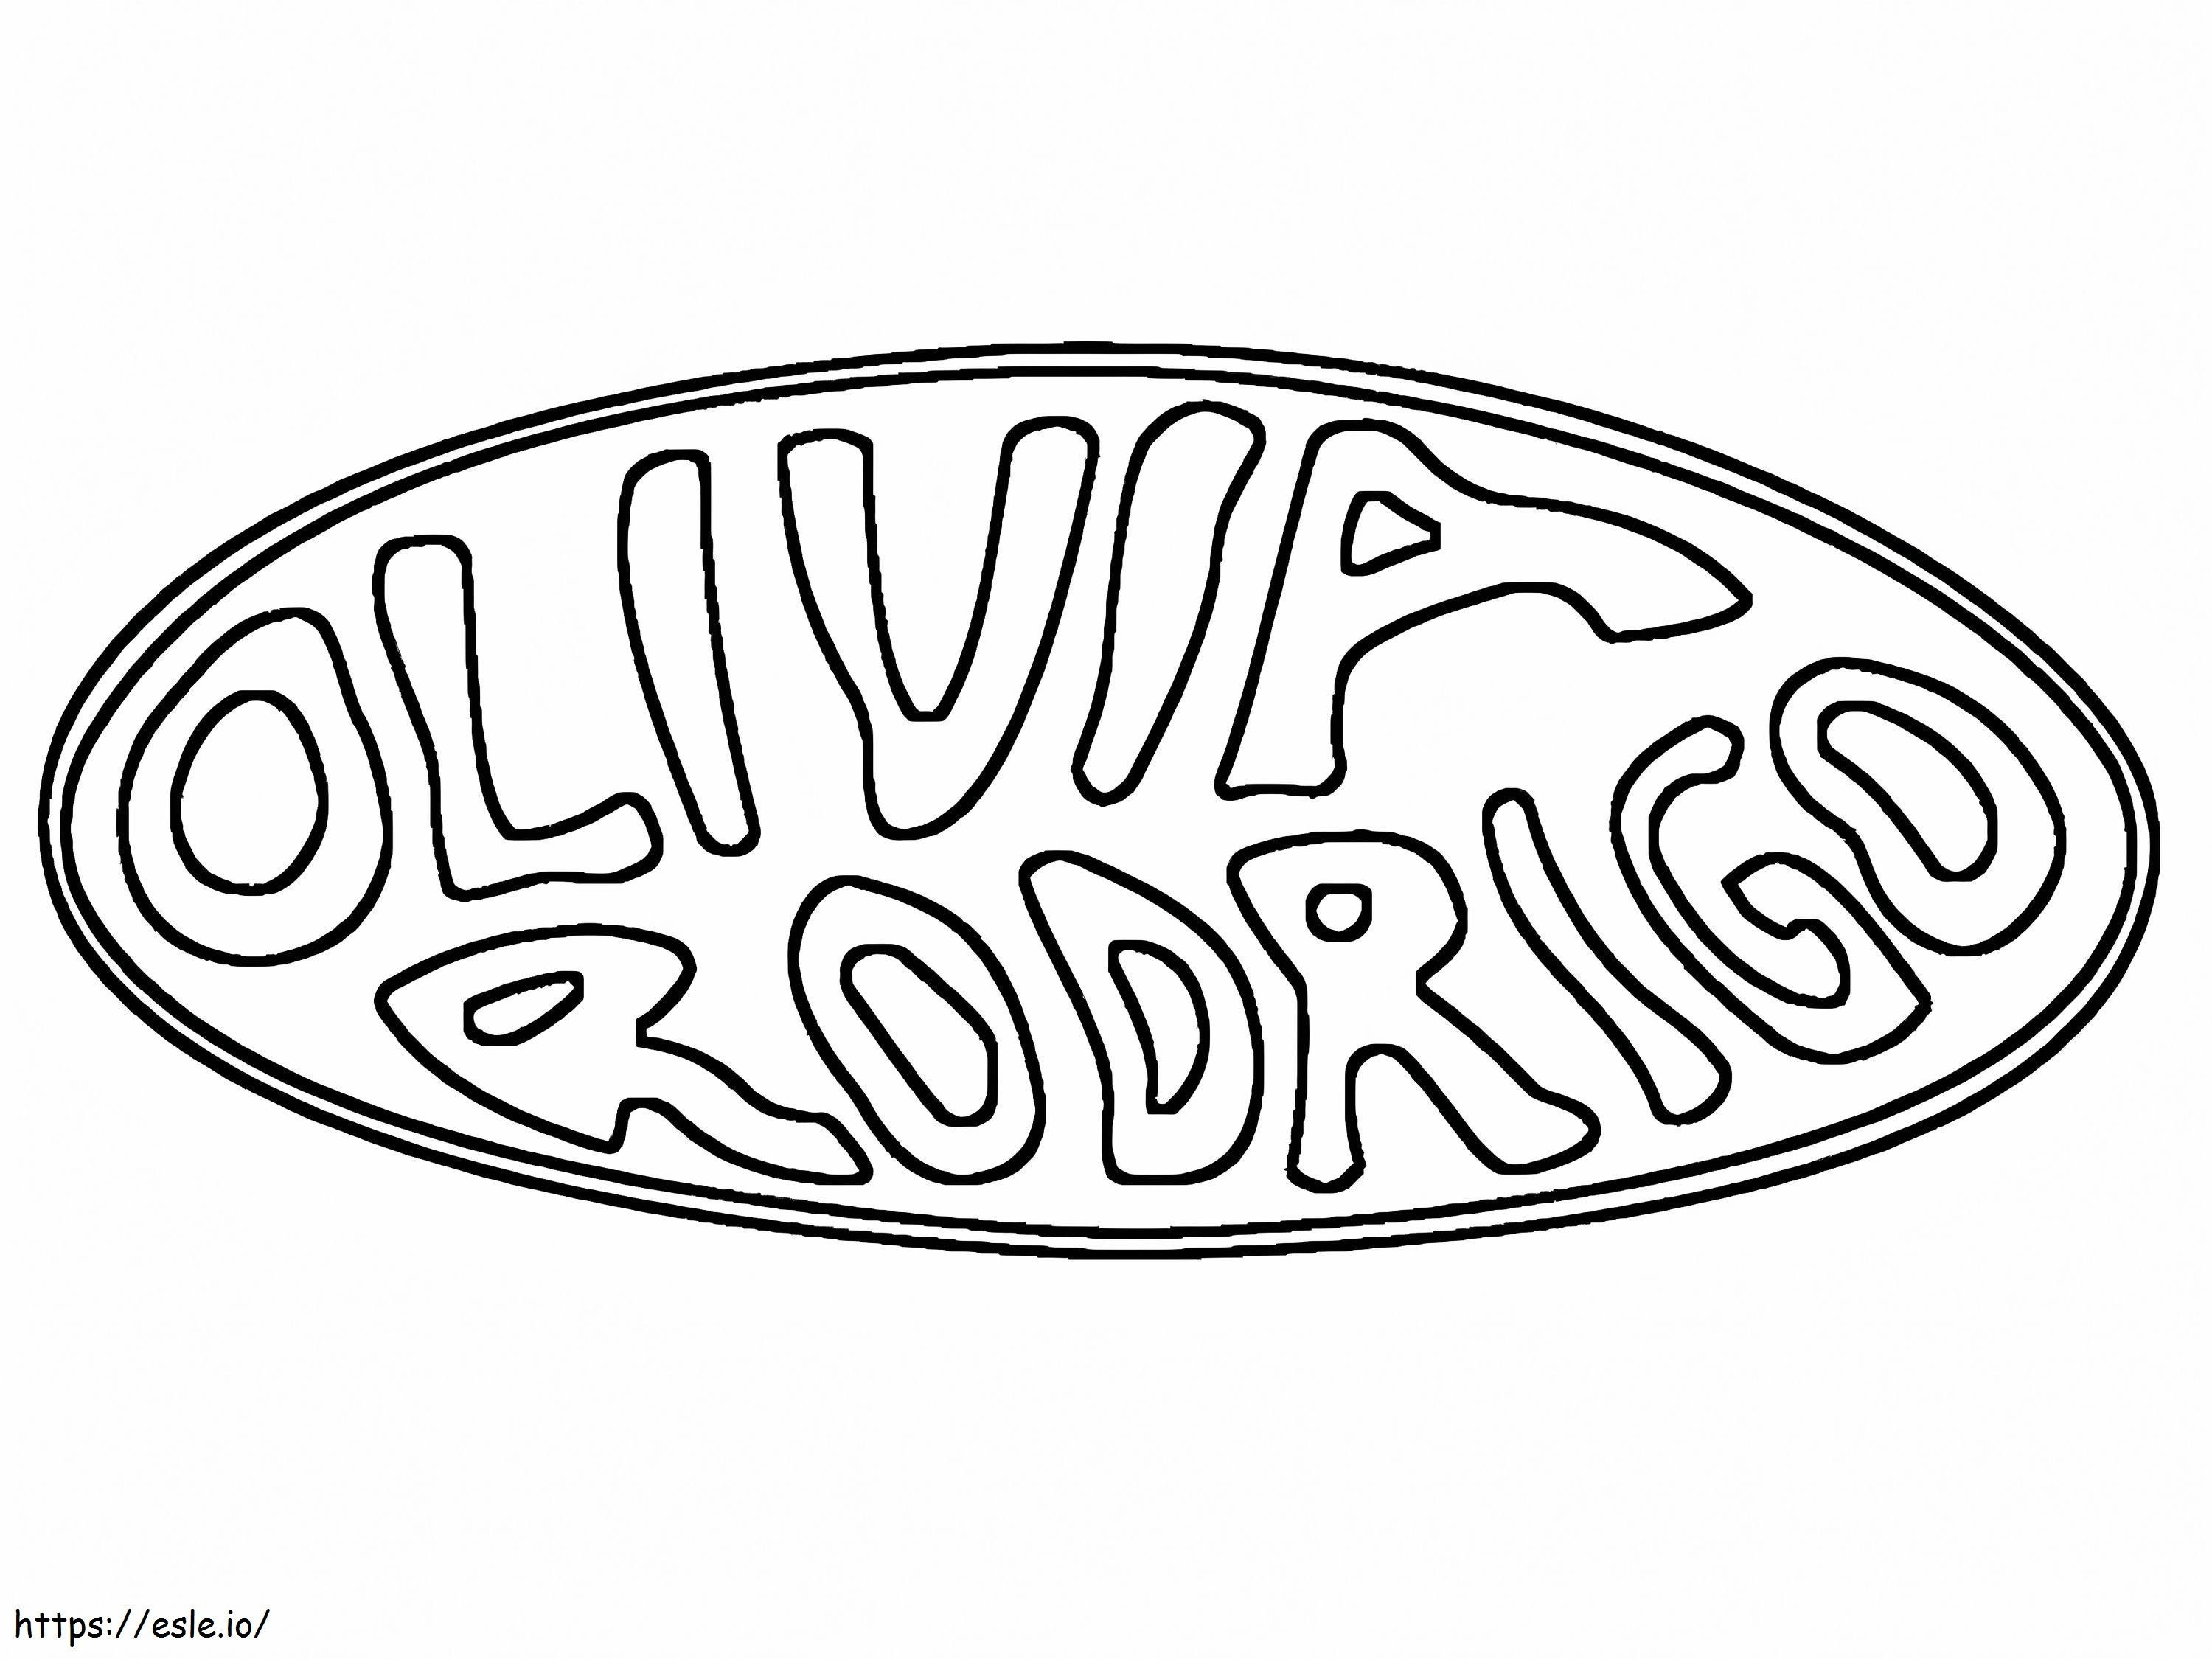 Olivia Rodrigo Logo para colorir